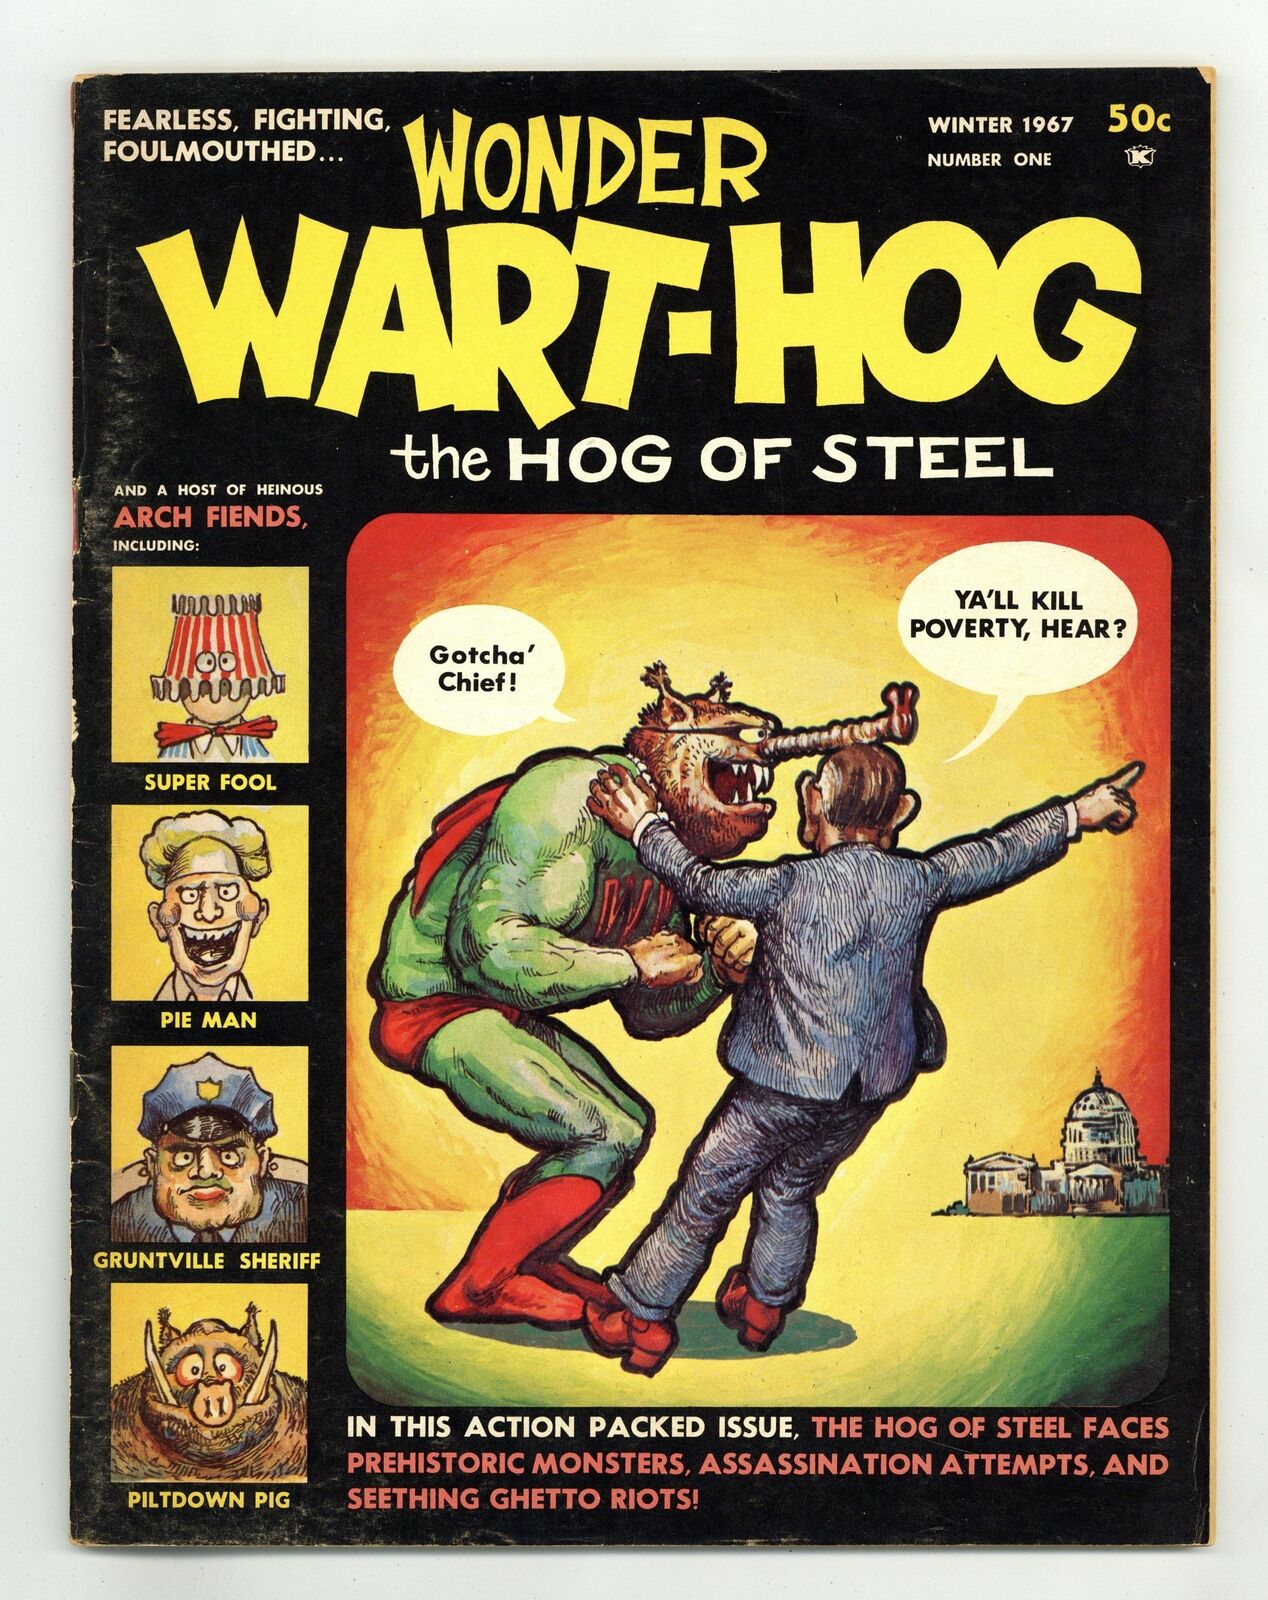 Wonder Wart-Hog Magazine #1 VG+ 4.5 1967